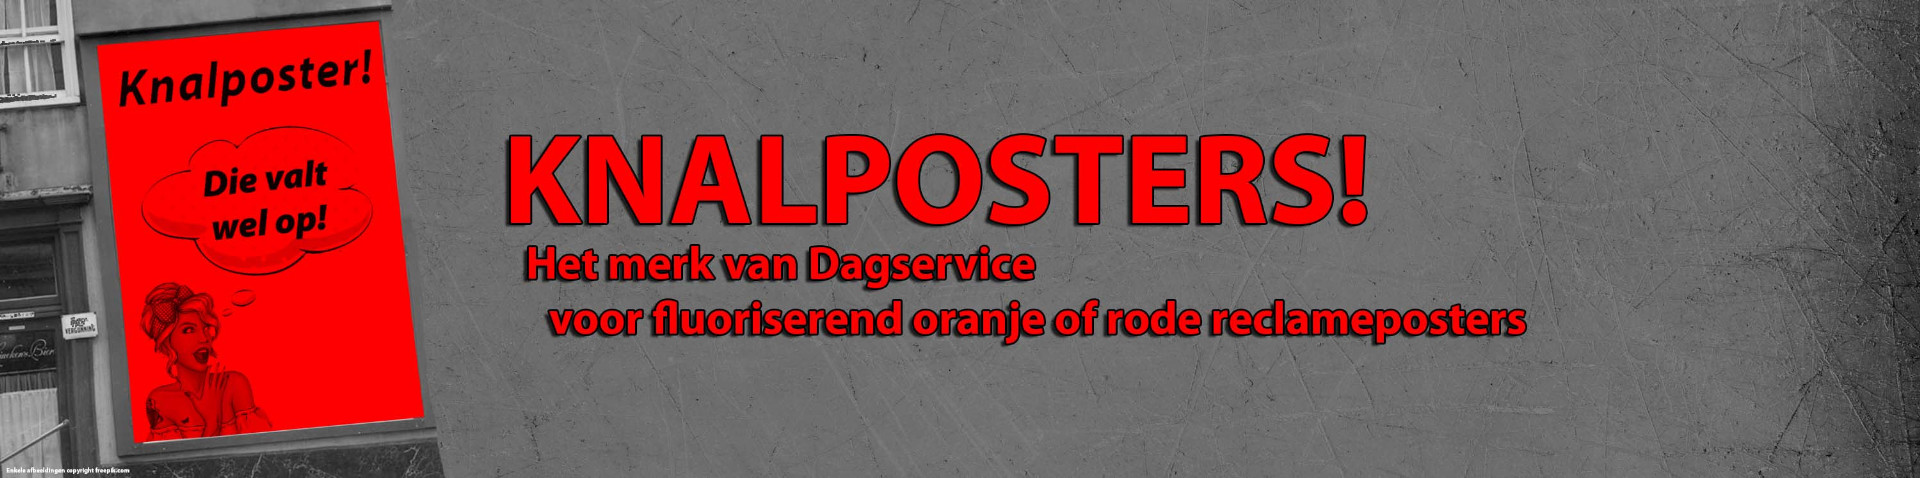 Knalposters! Het merk van Dagservice voor fluoriserend oranje of rode reclameposters